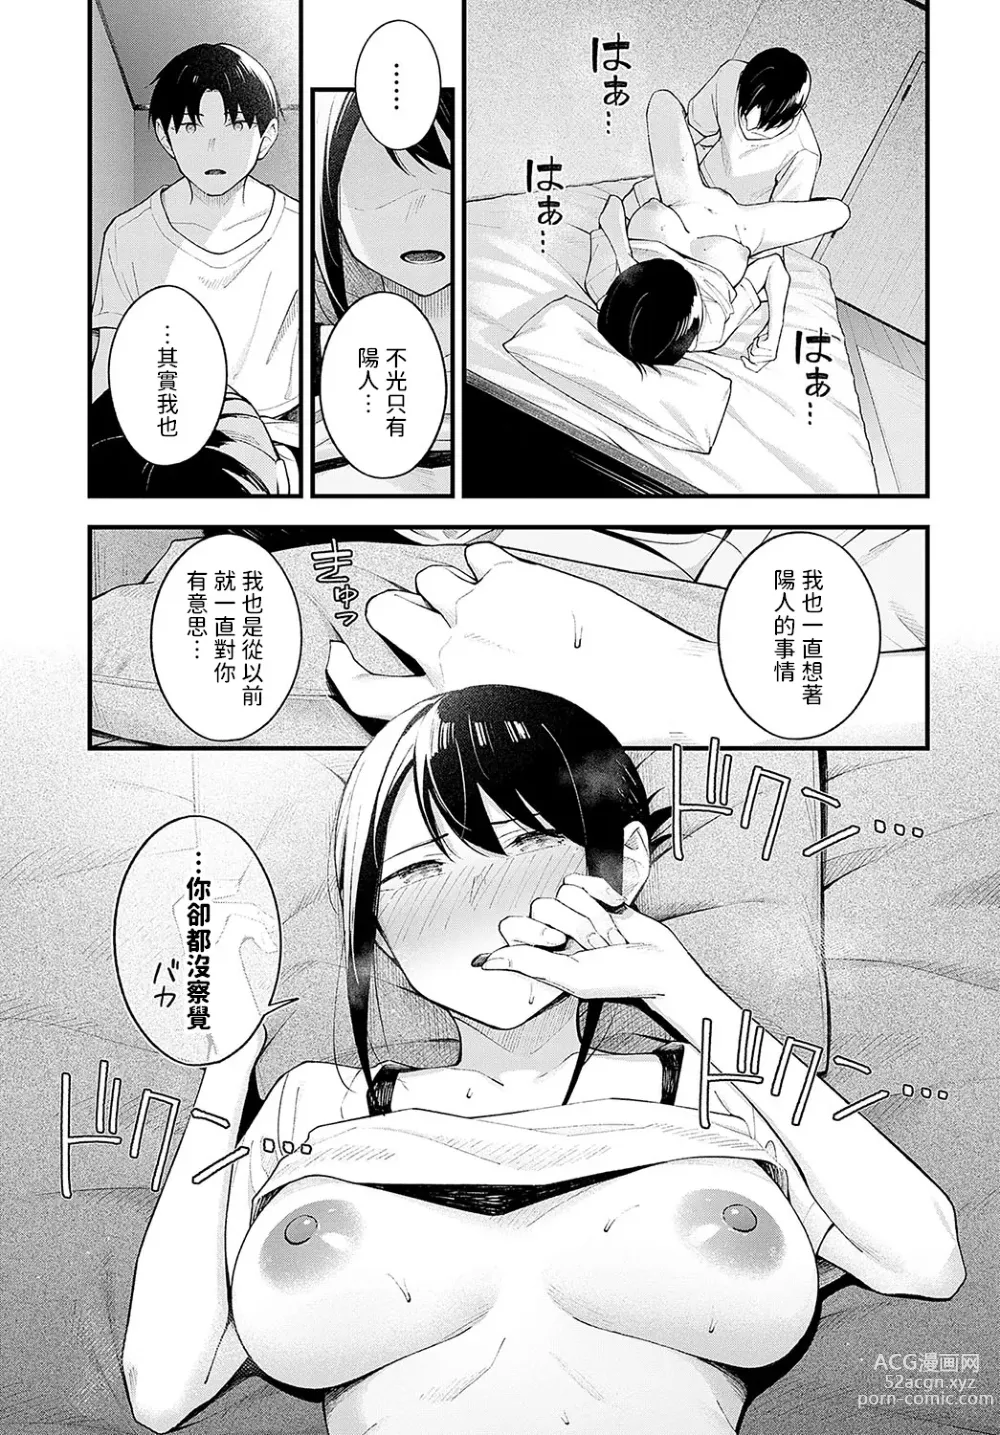 Page 19 of manga Kennetsu